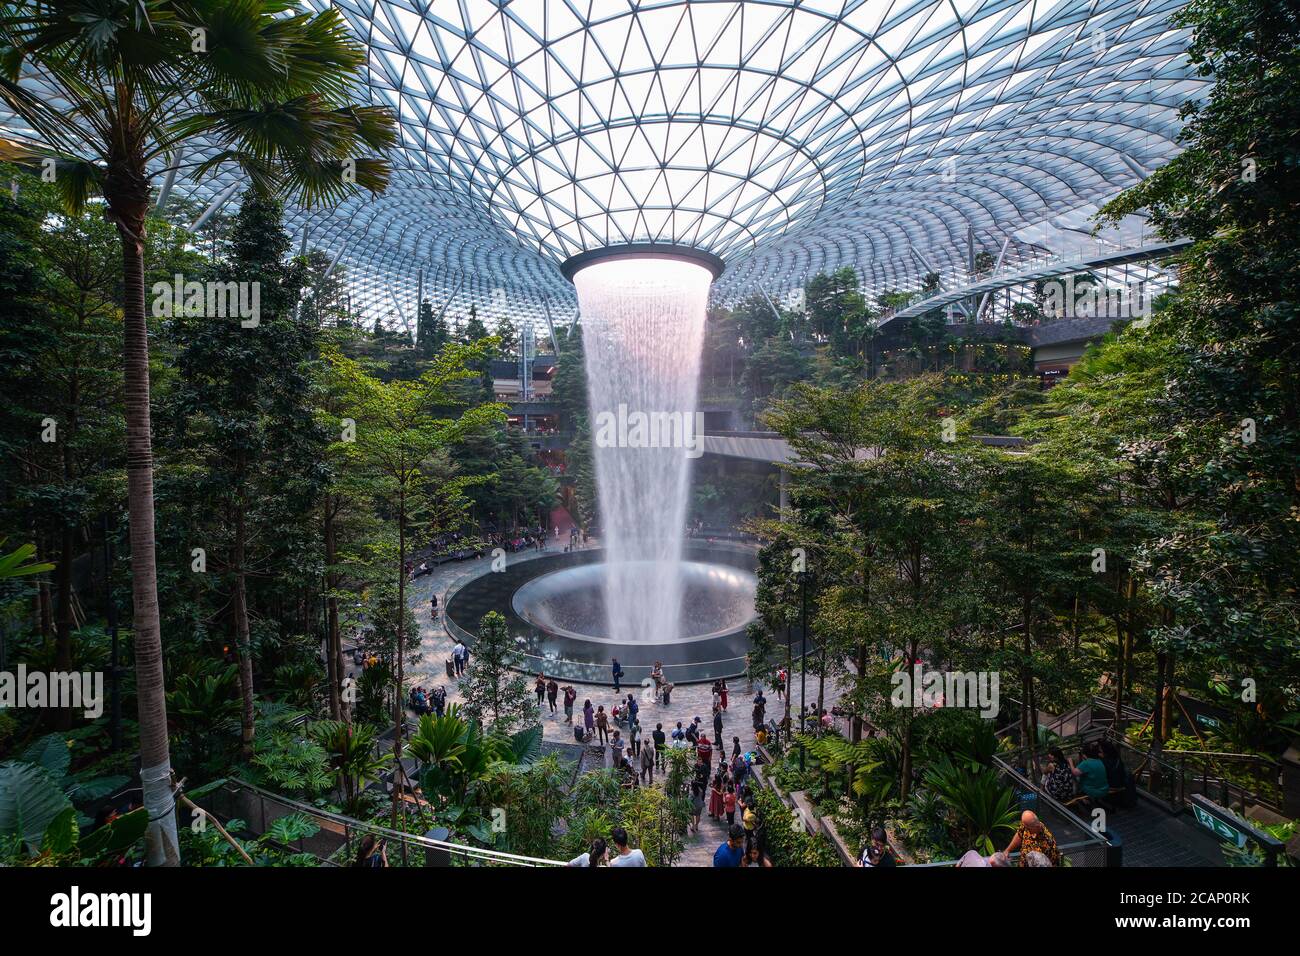 Le Rain Vortex, une cascade intérieure de 40 m de haut située à l'intérieur de l'aéroport Jewel Changi de Singapour. L'aéroport de Jewel Changi ouvrira ses portes le 17 avril 20 Banque D'Images